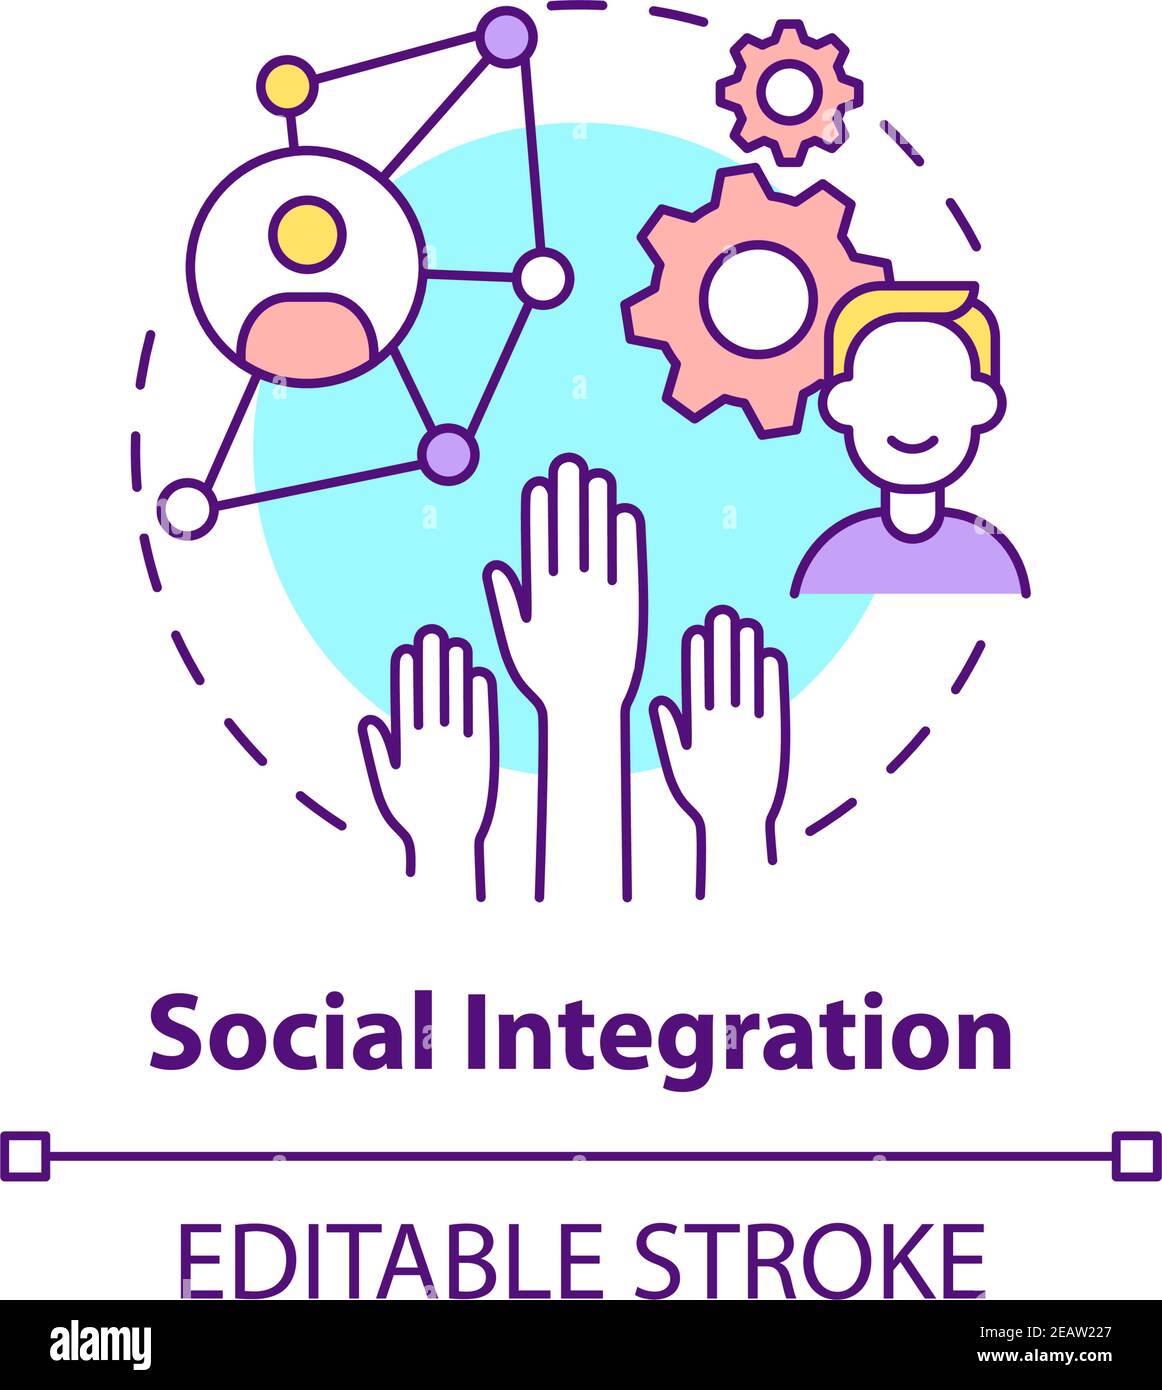 Social integration concept icon Stock Vector